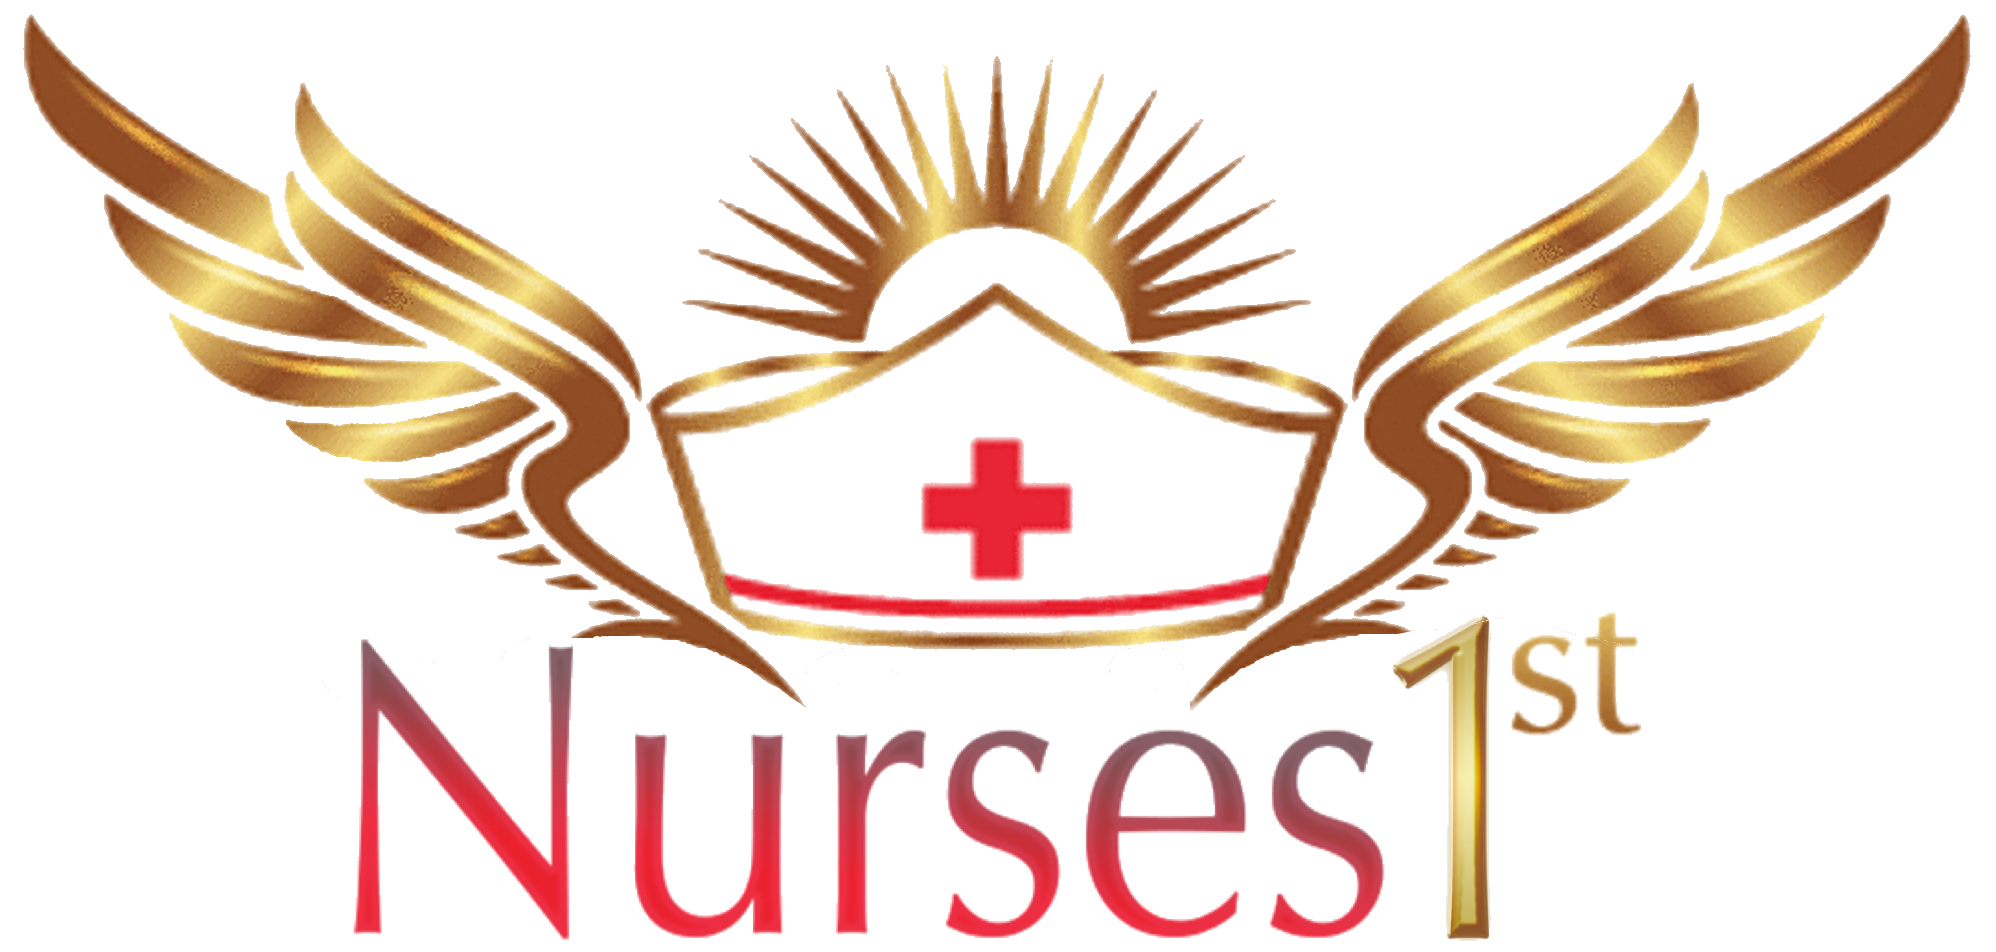 Nurses 1st